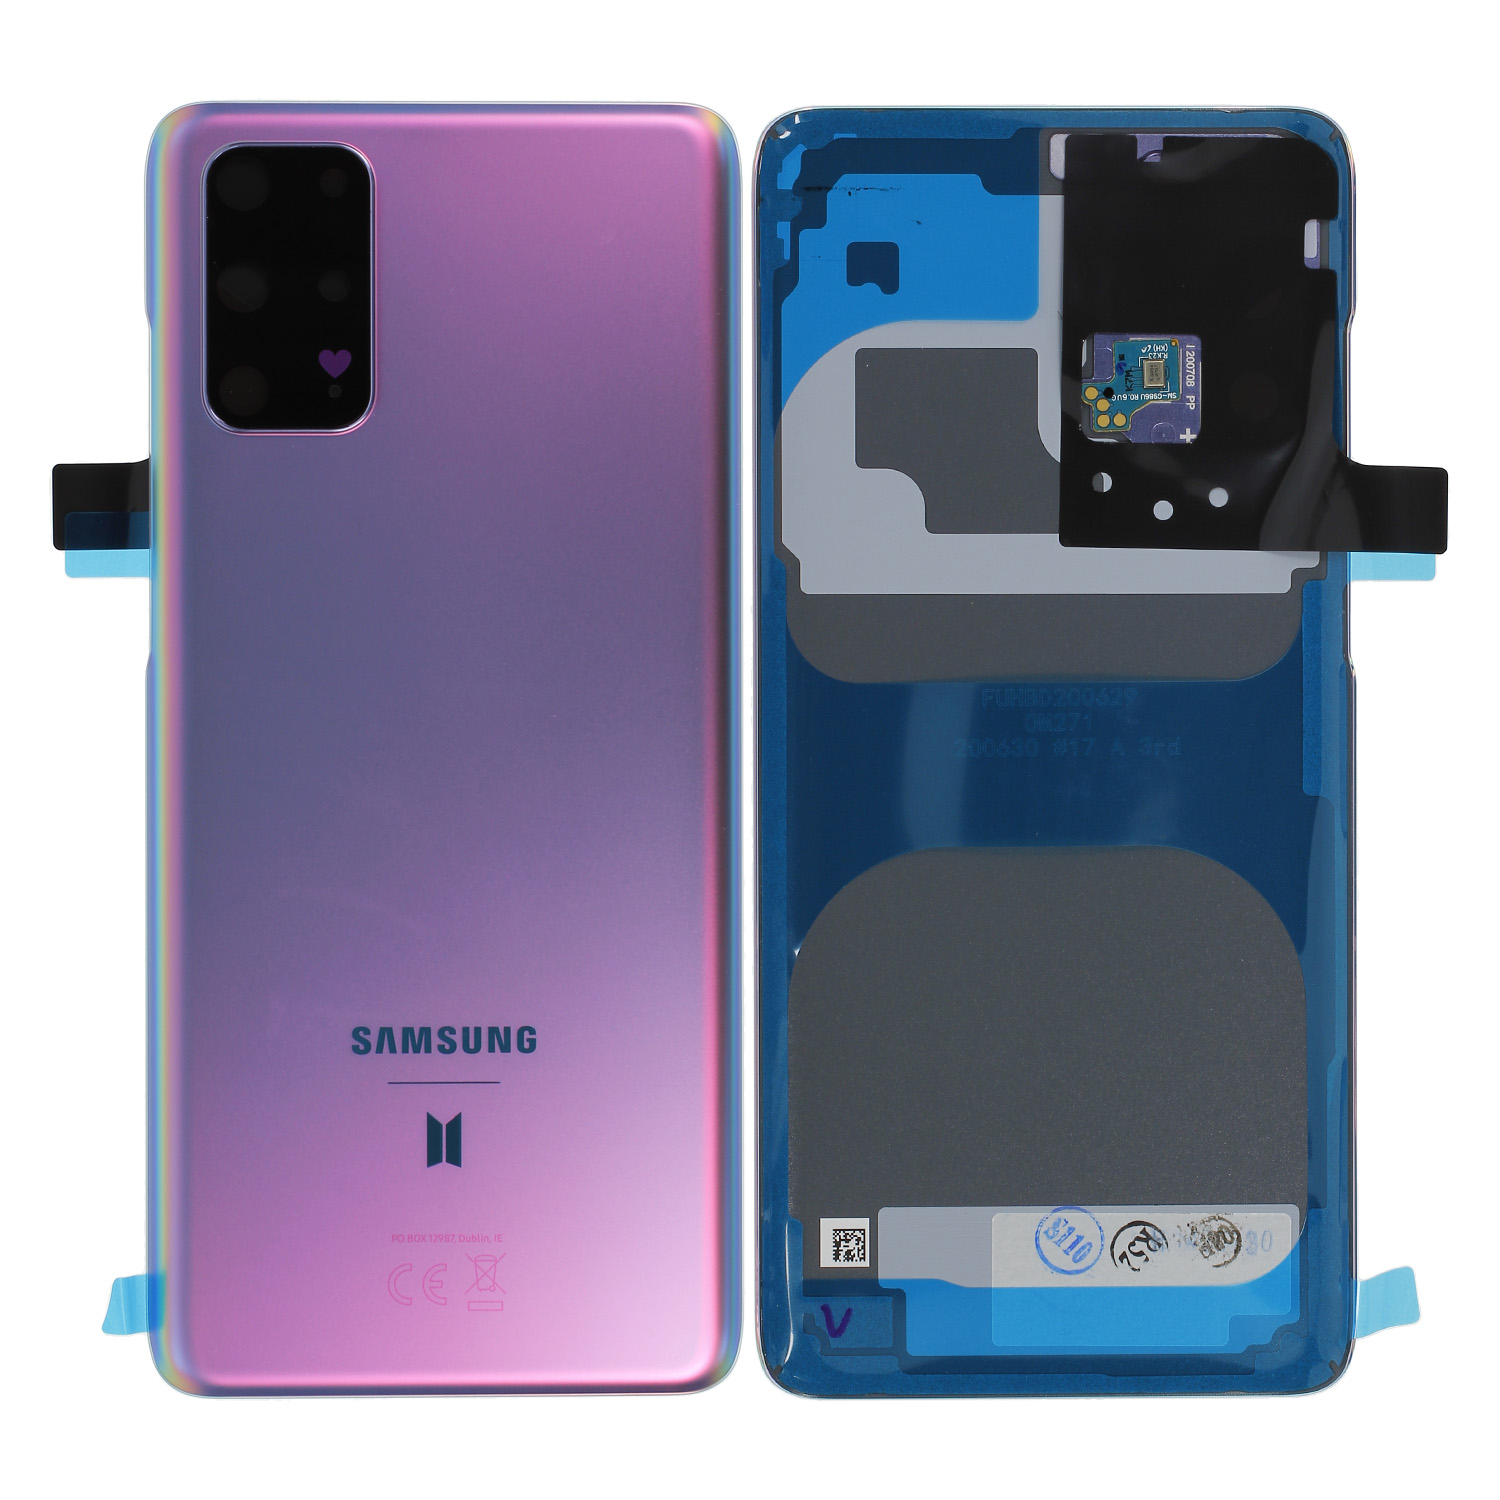 Samsung Galaxy S20+ G985F / S20 5G G986B Akkudeckel, BTS Edition Lila, Serviceware